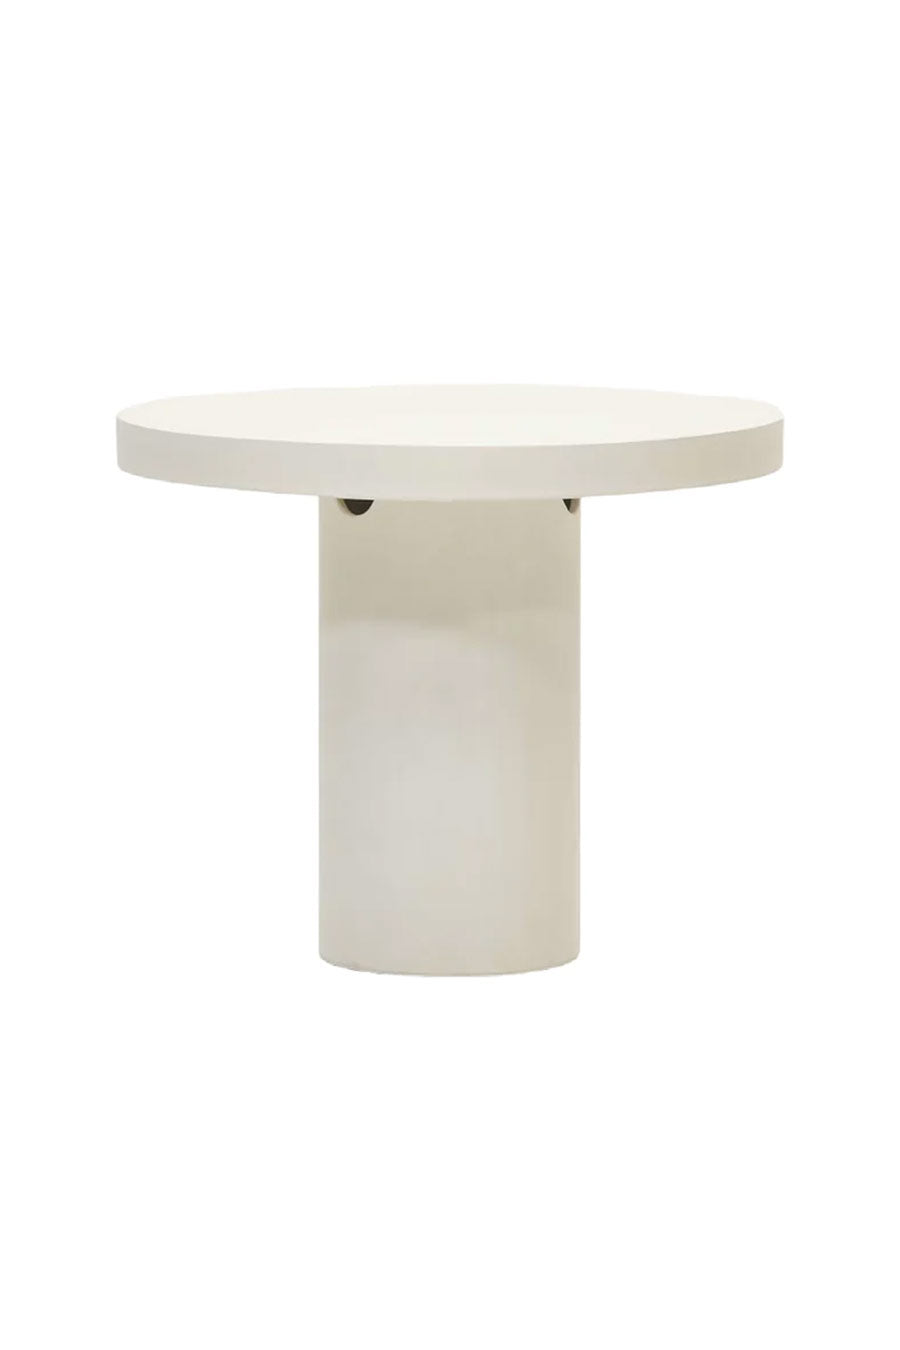 White Cement Round Table | La Forma Aiguablava